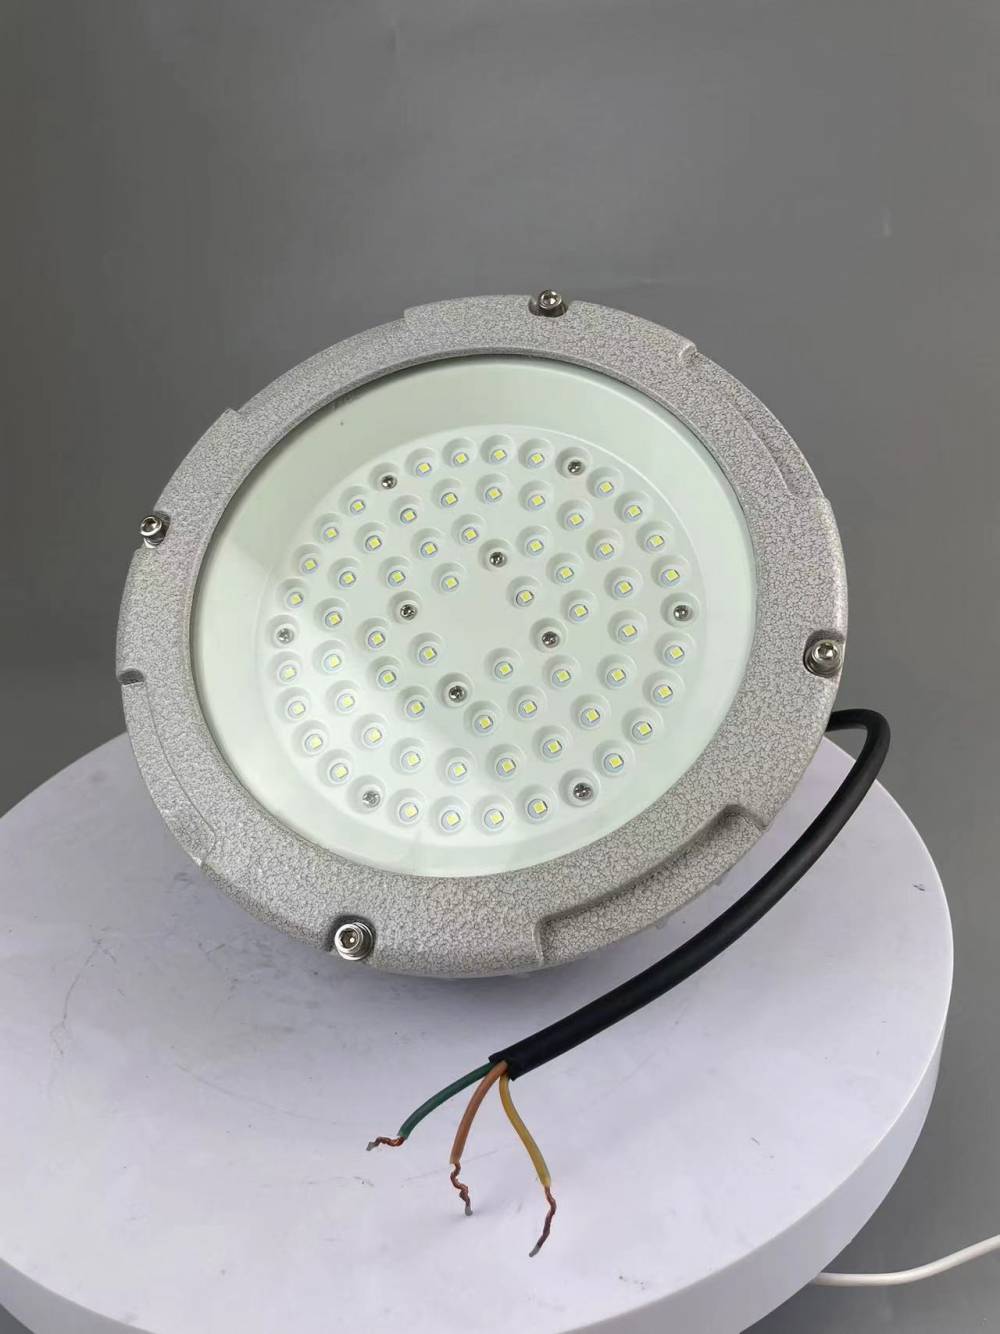 SZSW8136-30w防爆工作灯LED防爆平台灯尚为科技